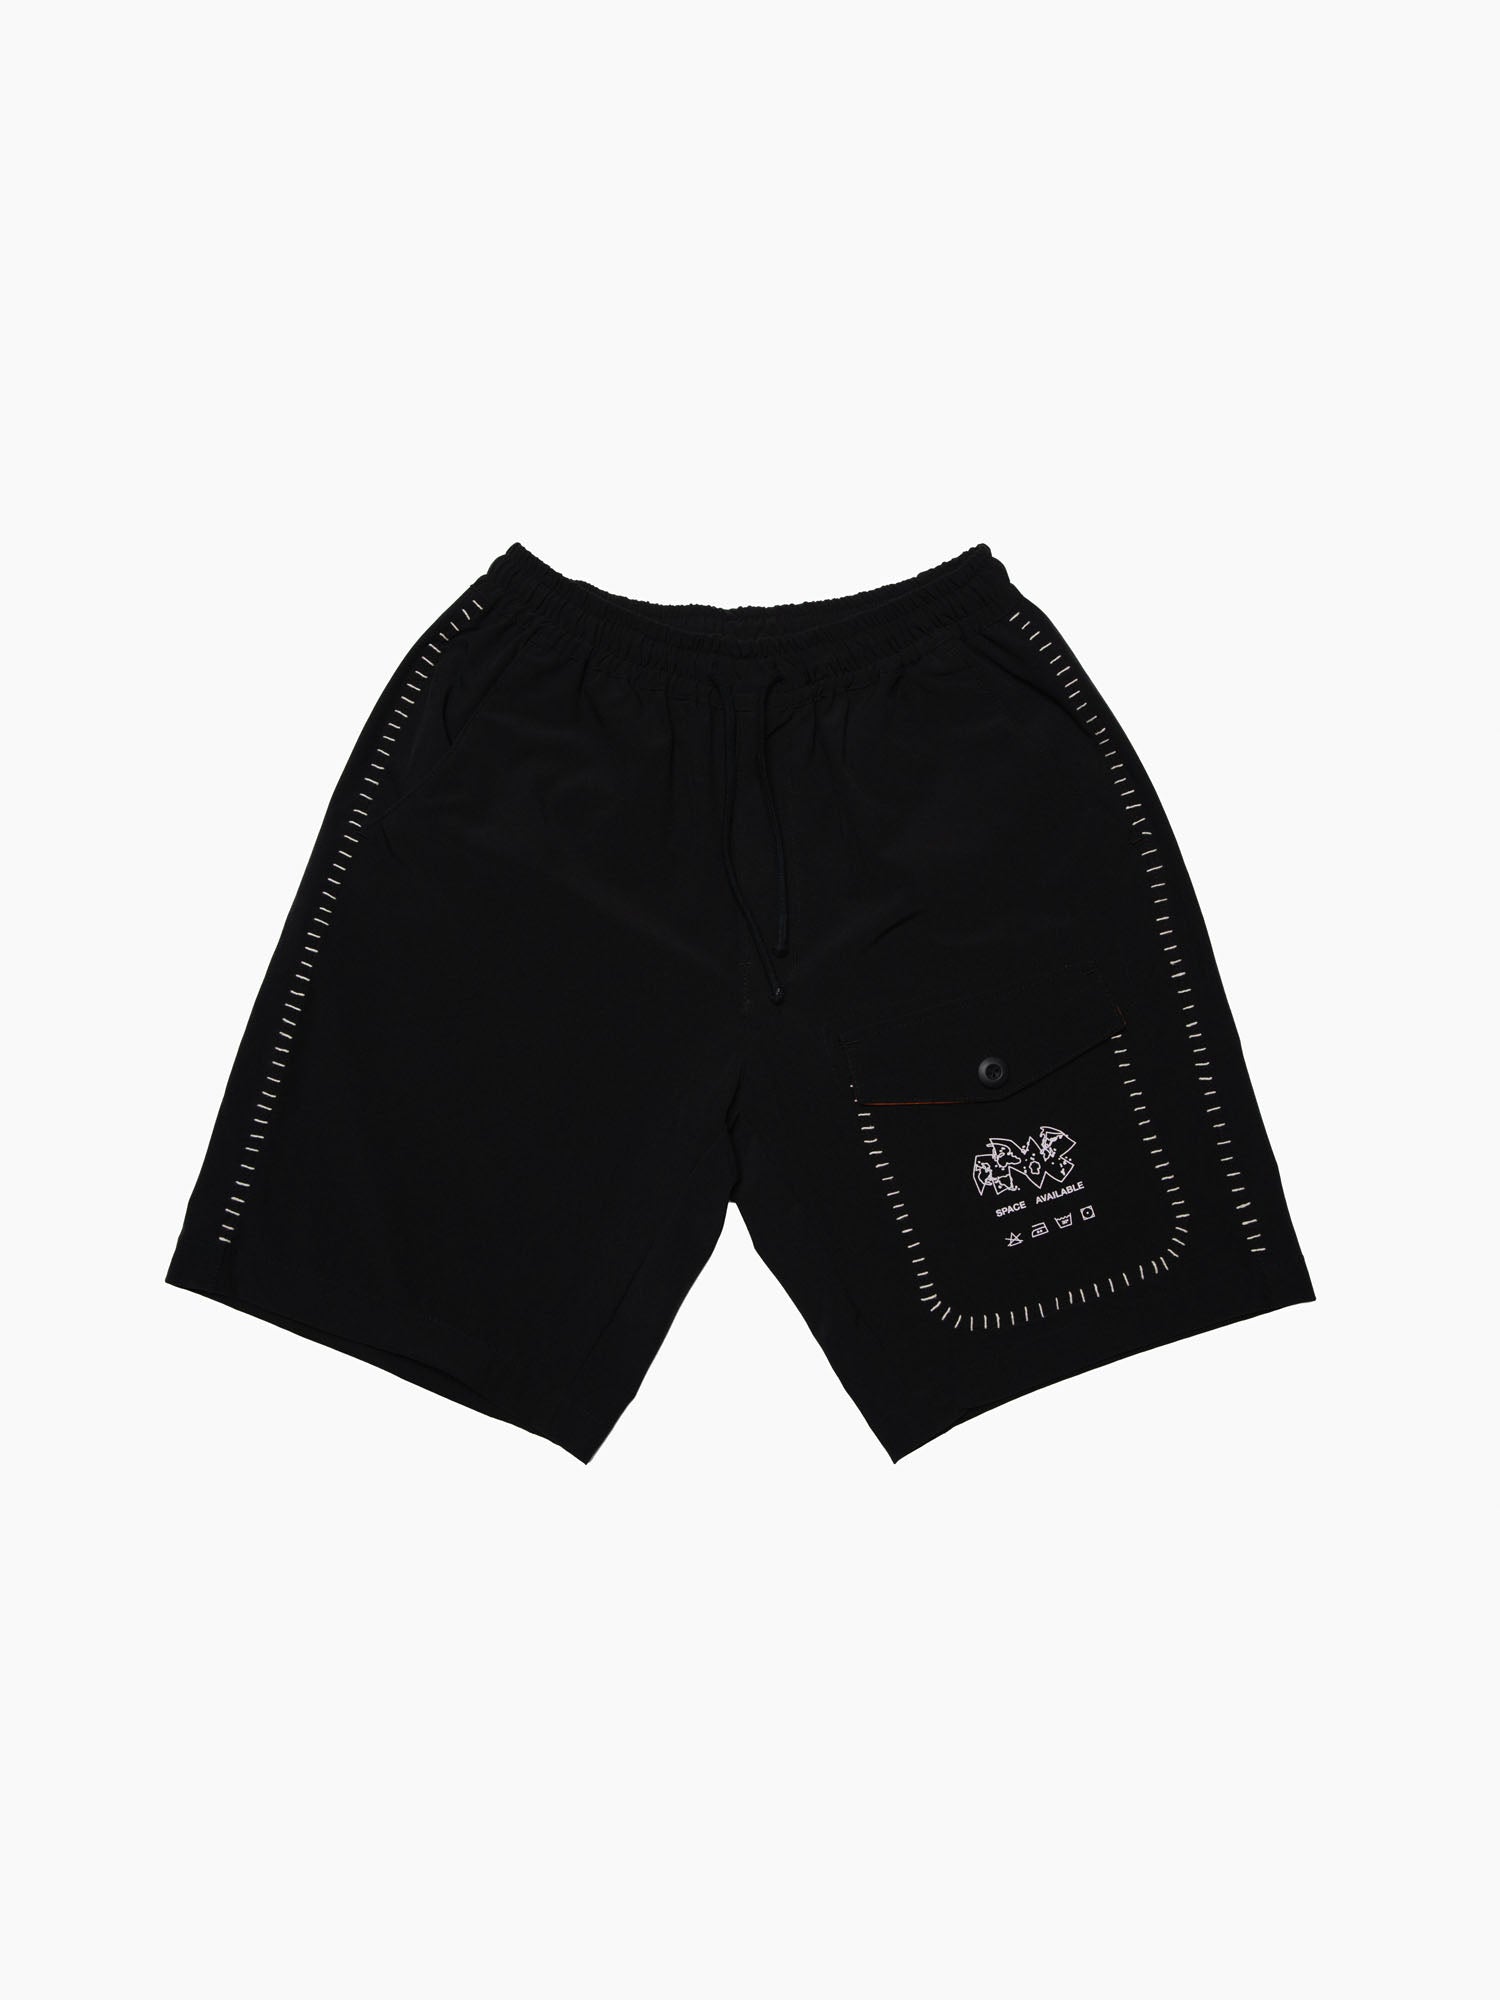 Upcycled Work Shorts Black